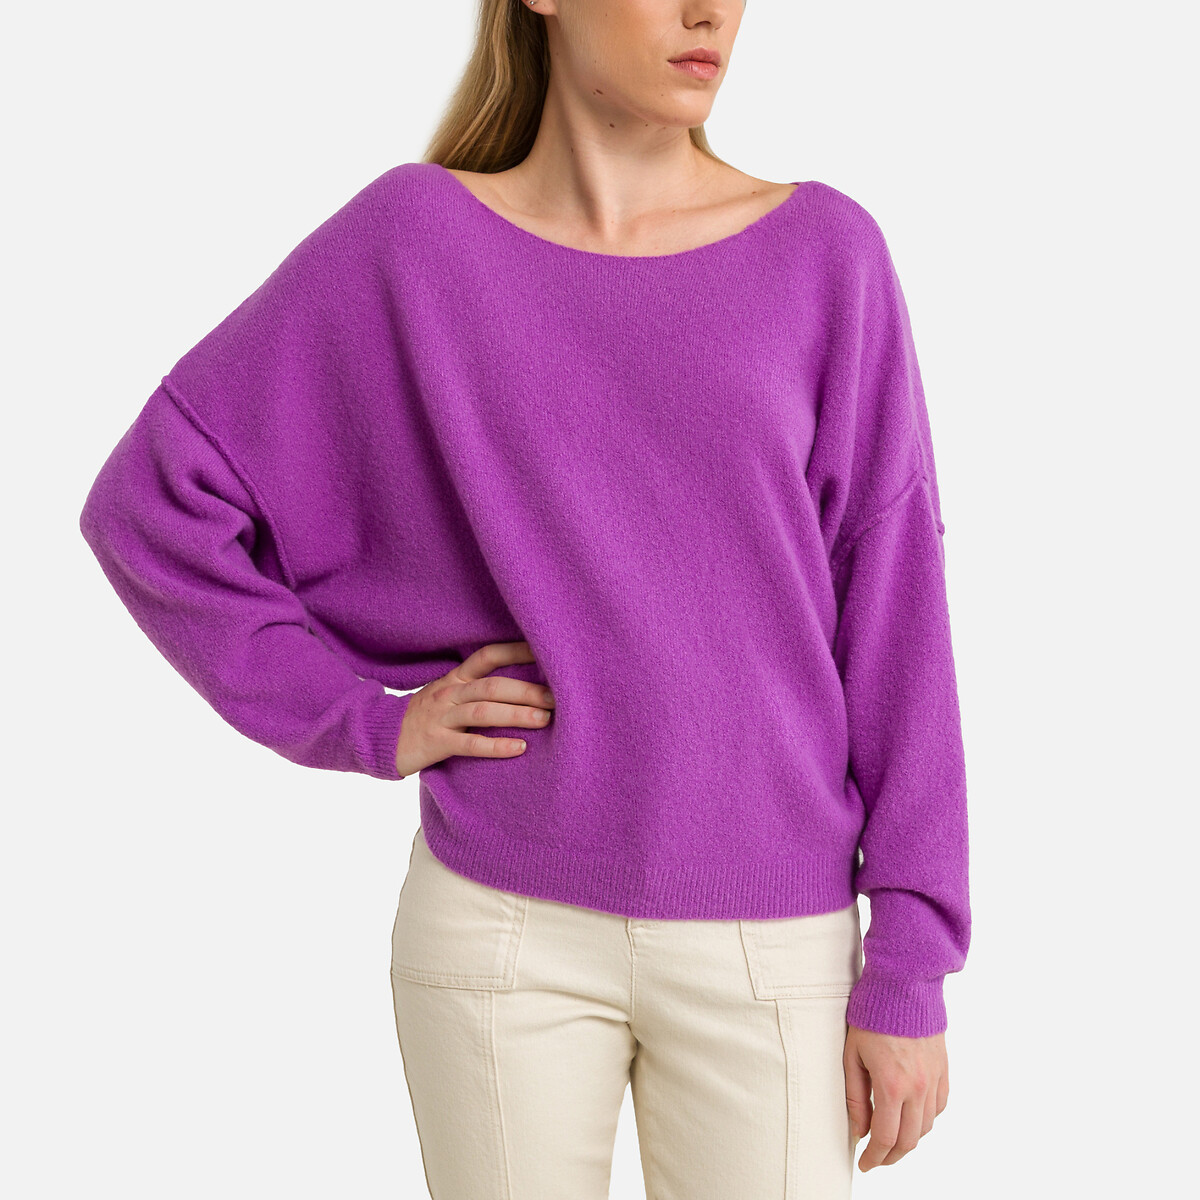 Пуловер с длинными рукавами и вырезом-лодочкой DAMSVILLE XS/S фиолетовый пуловер с вырезом лодочка из плотного трикотажа damsville xs s серый